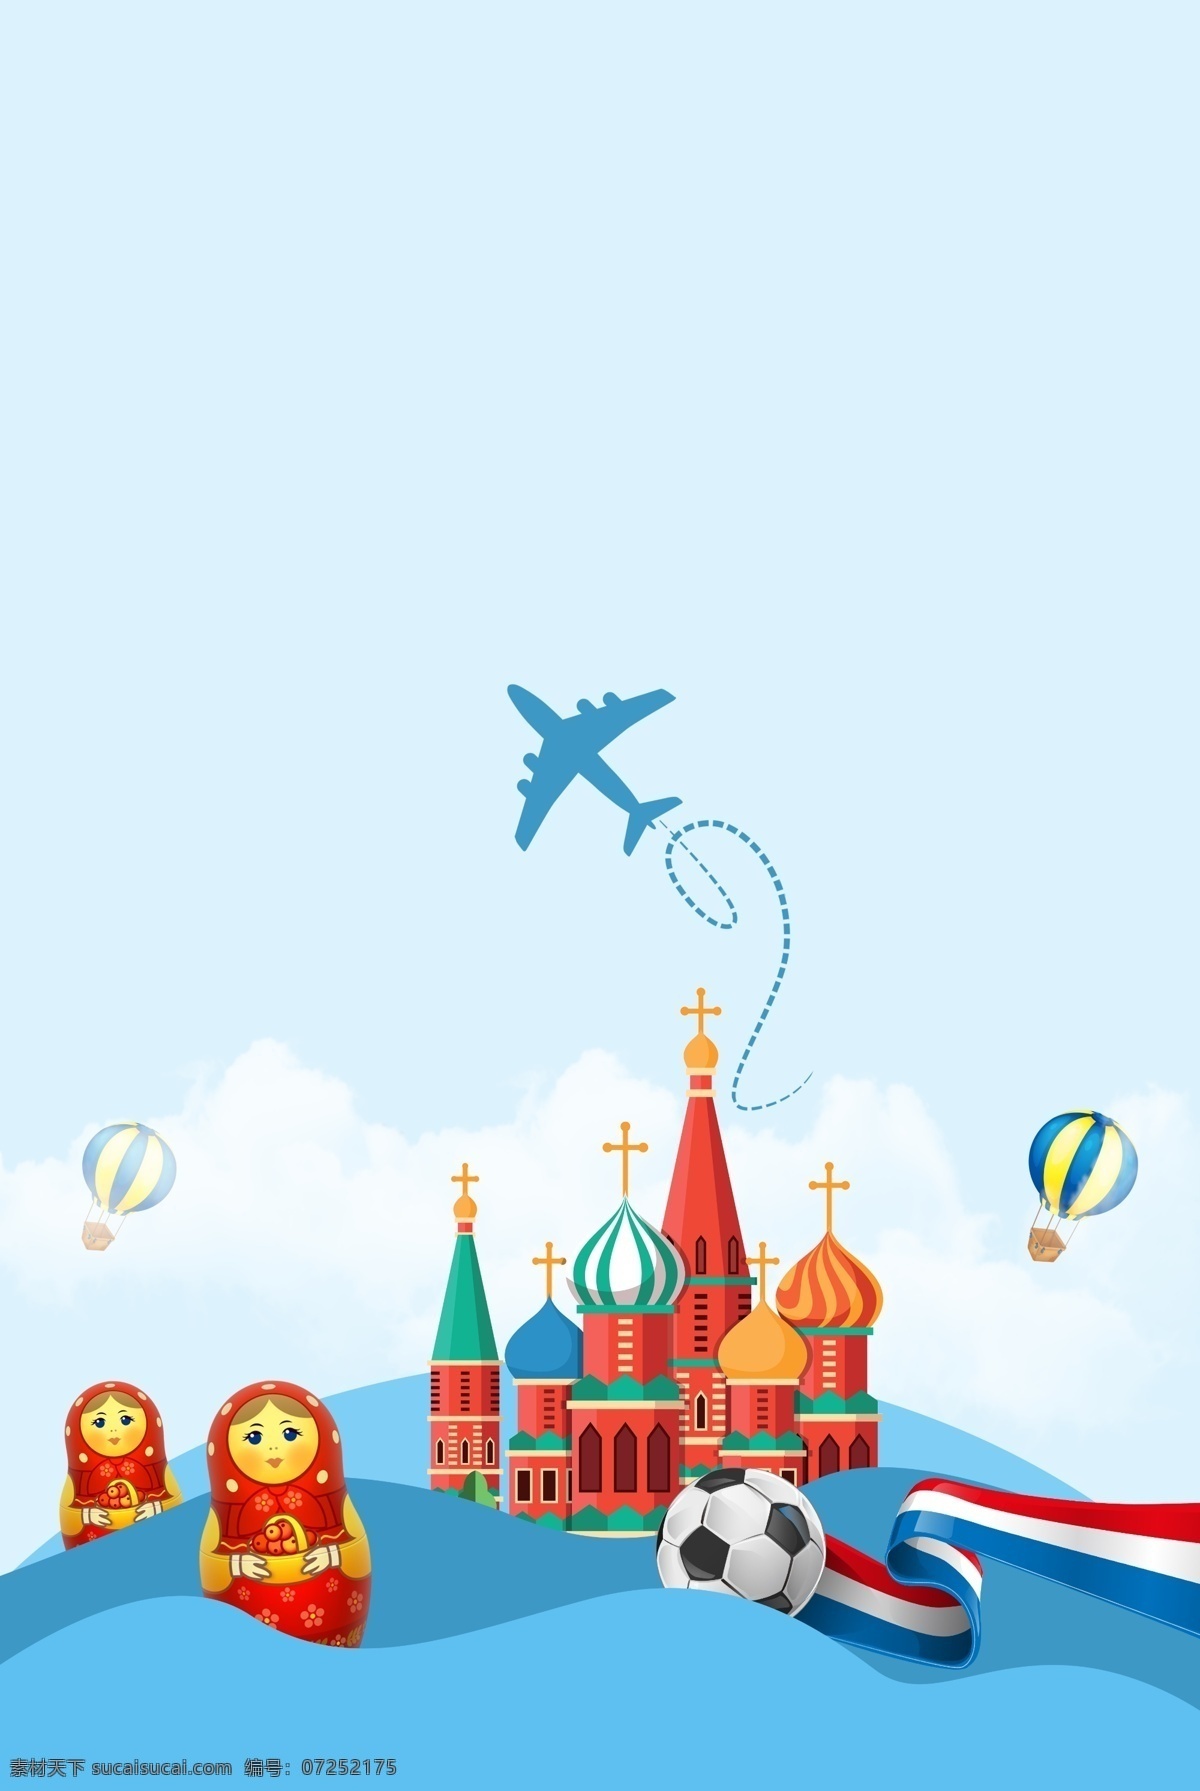 俄罗斯 著名 景点 圣 瓦西里 大 教堂 蓝色 背景 著名景点 蓝色背景 飞机 国外游 欧洲游 俄罗斯游玩 套娃 俄罗斯特色 足球